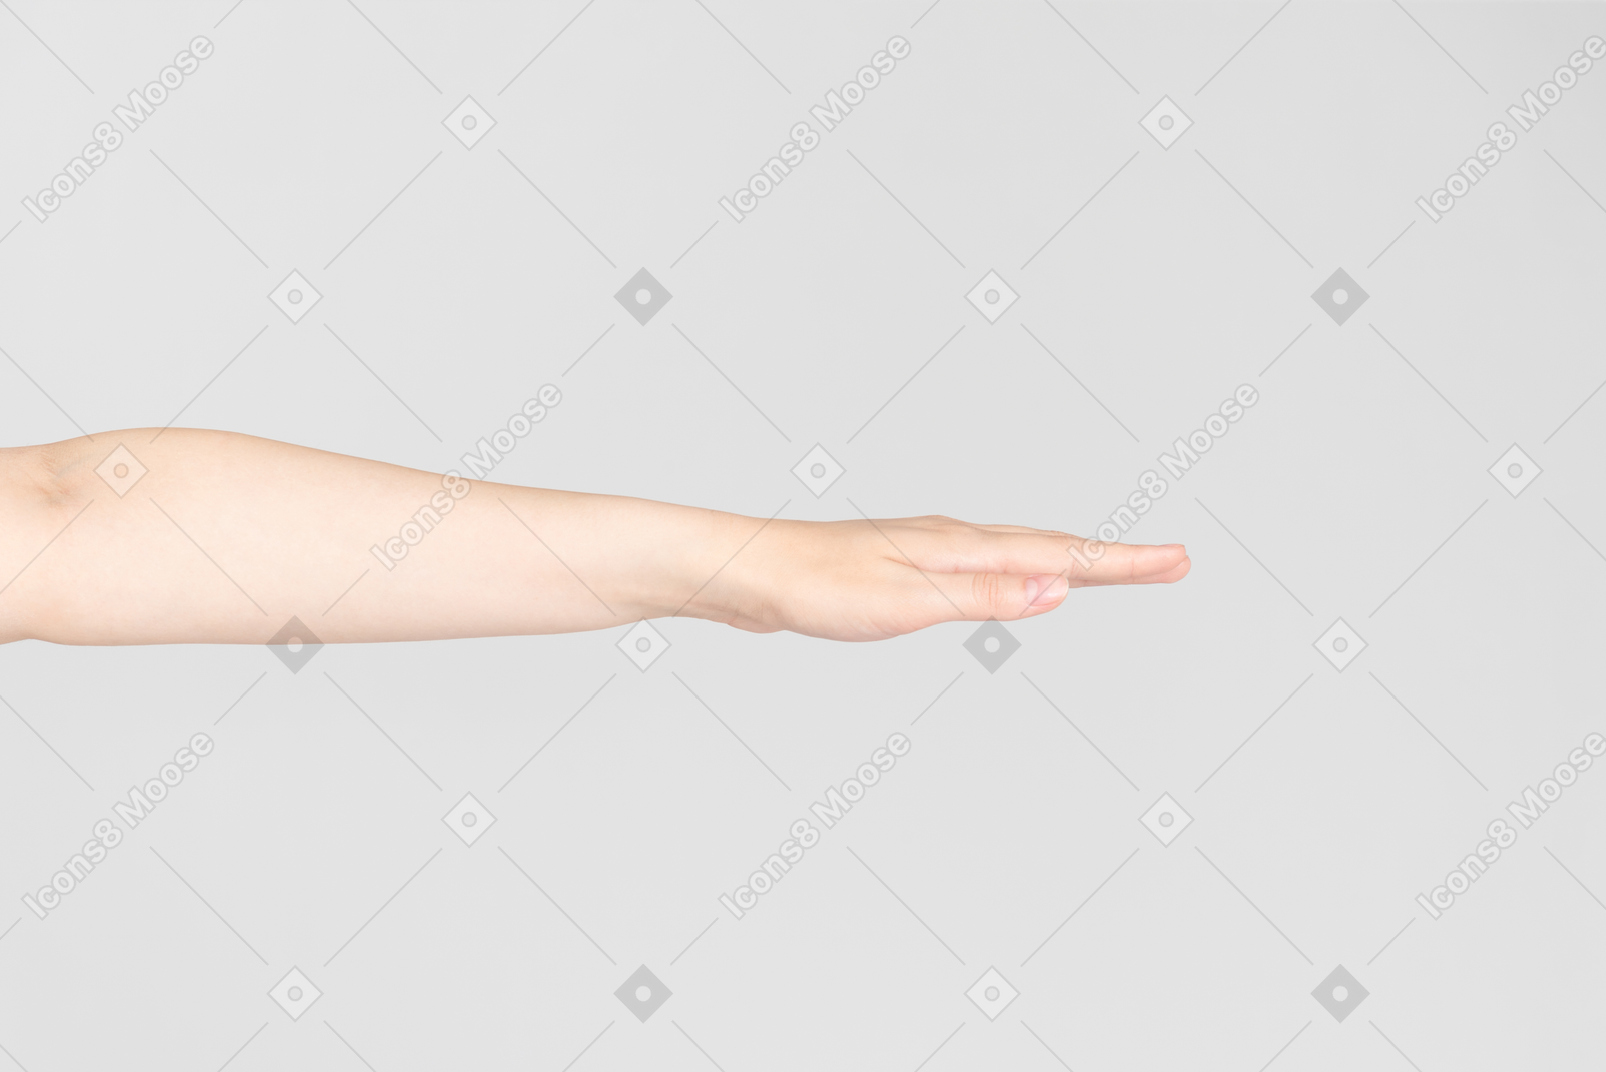 Regard de côté de la main féminine étendue